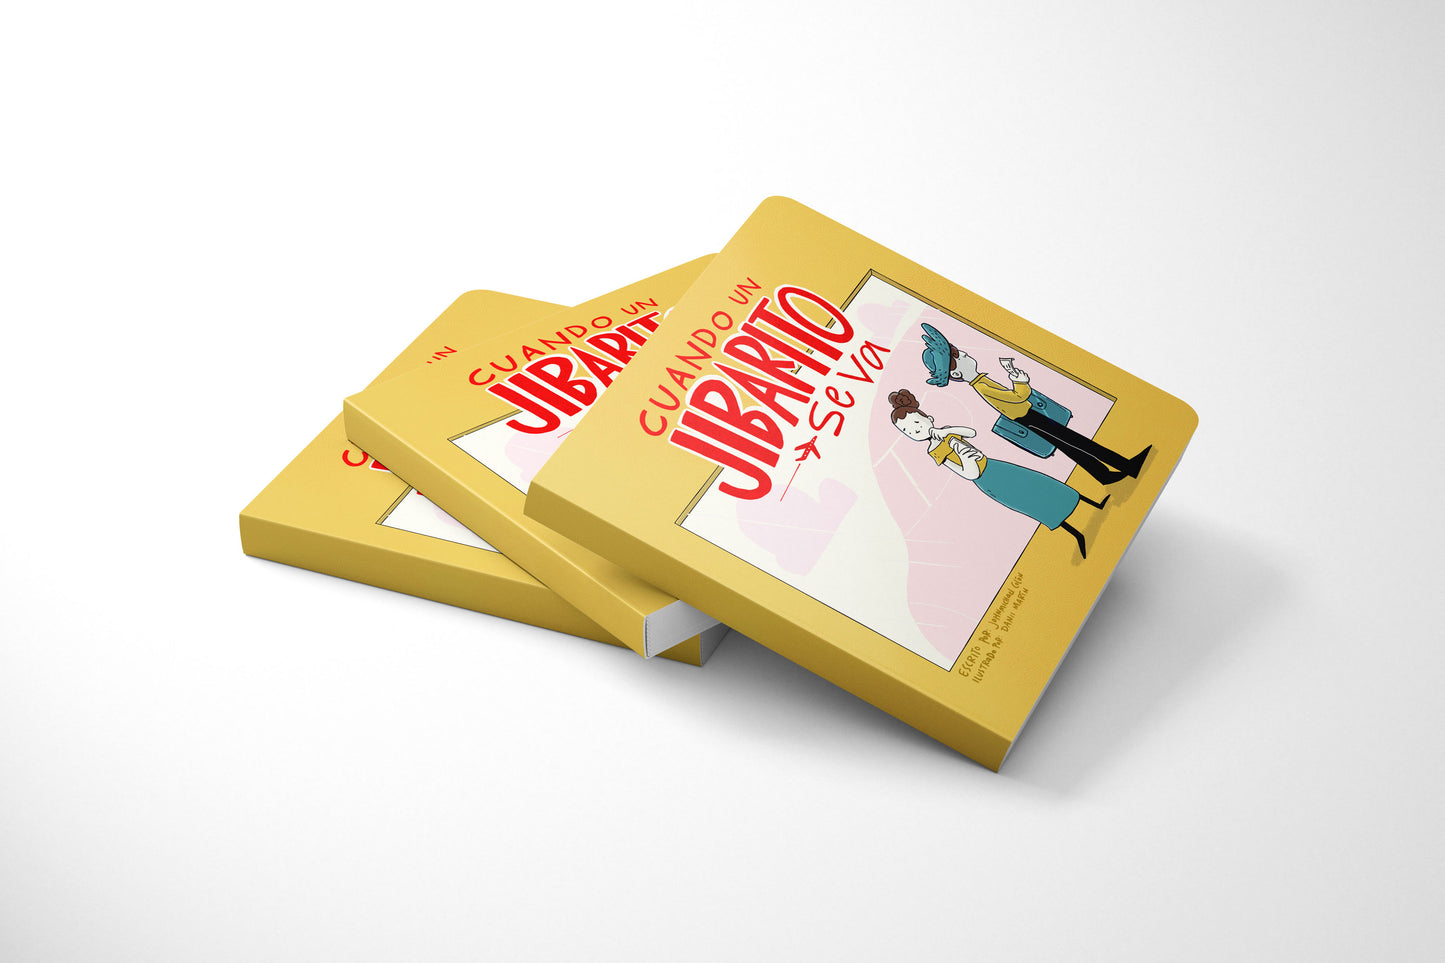 Cuando un Jibarito se va | Mini Board Book